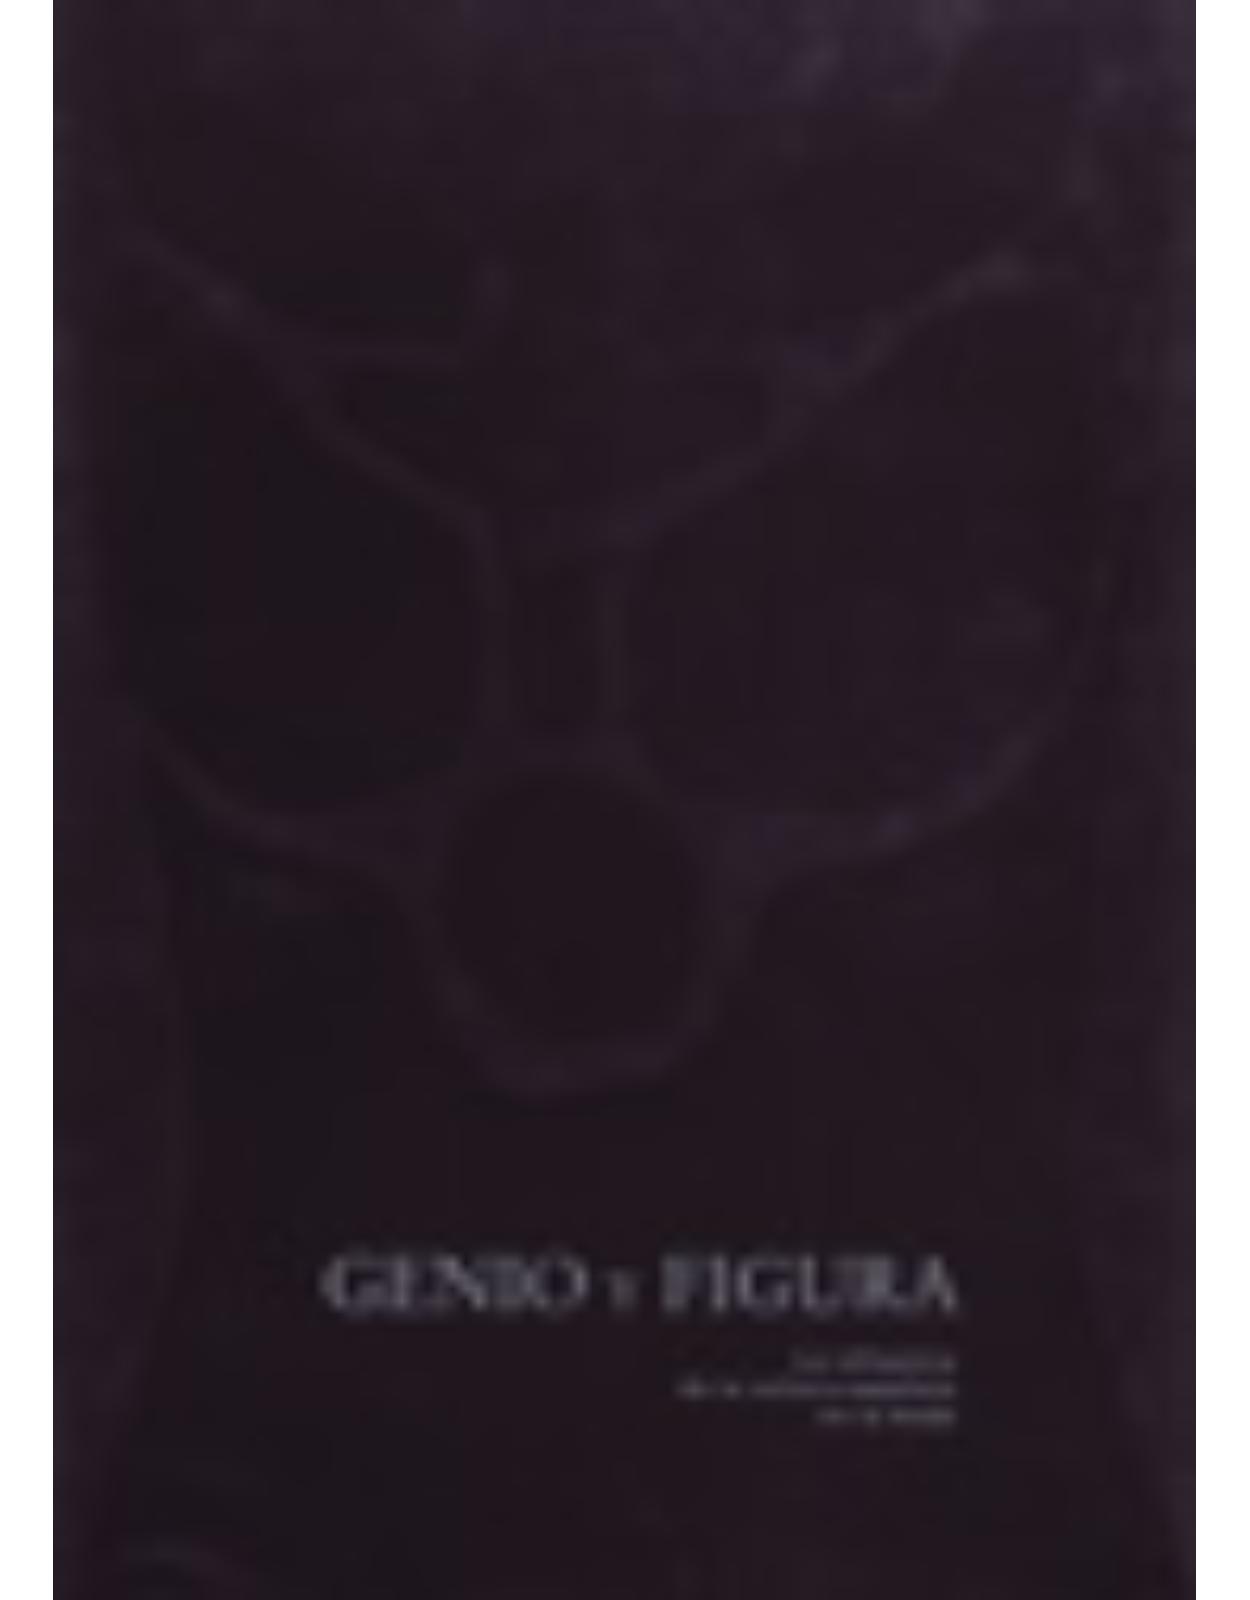 Genio y figura/Genius and Figure